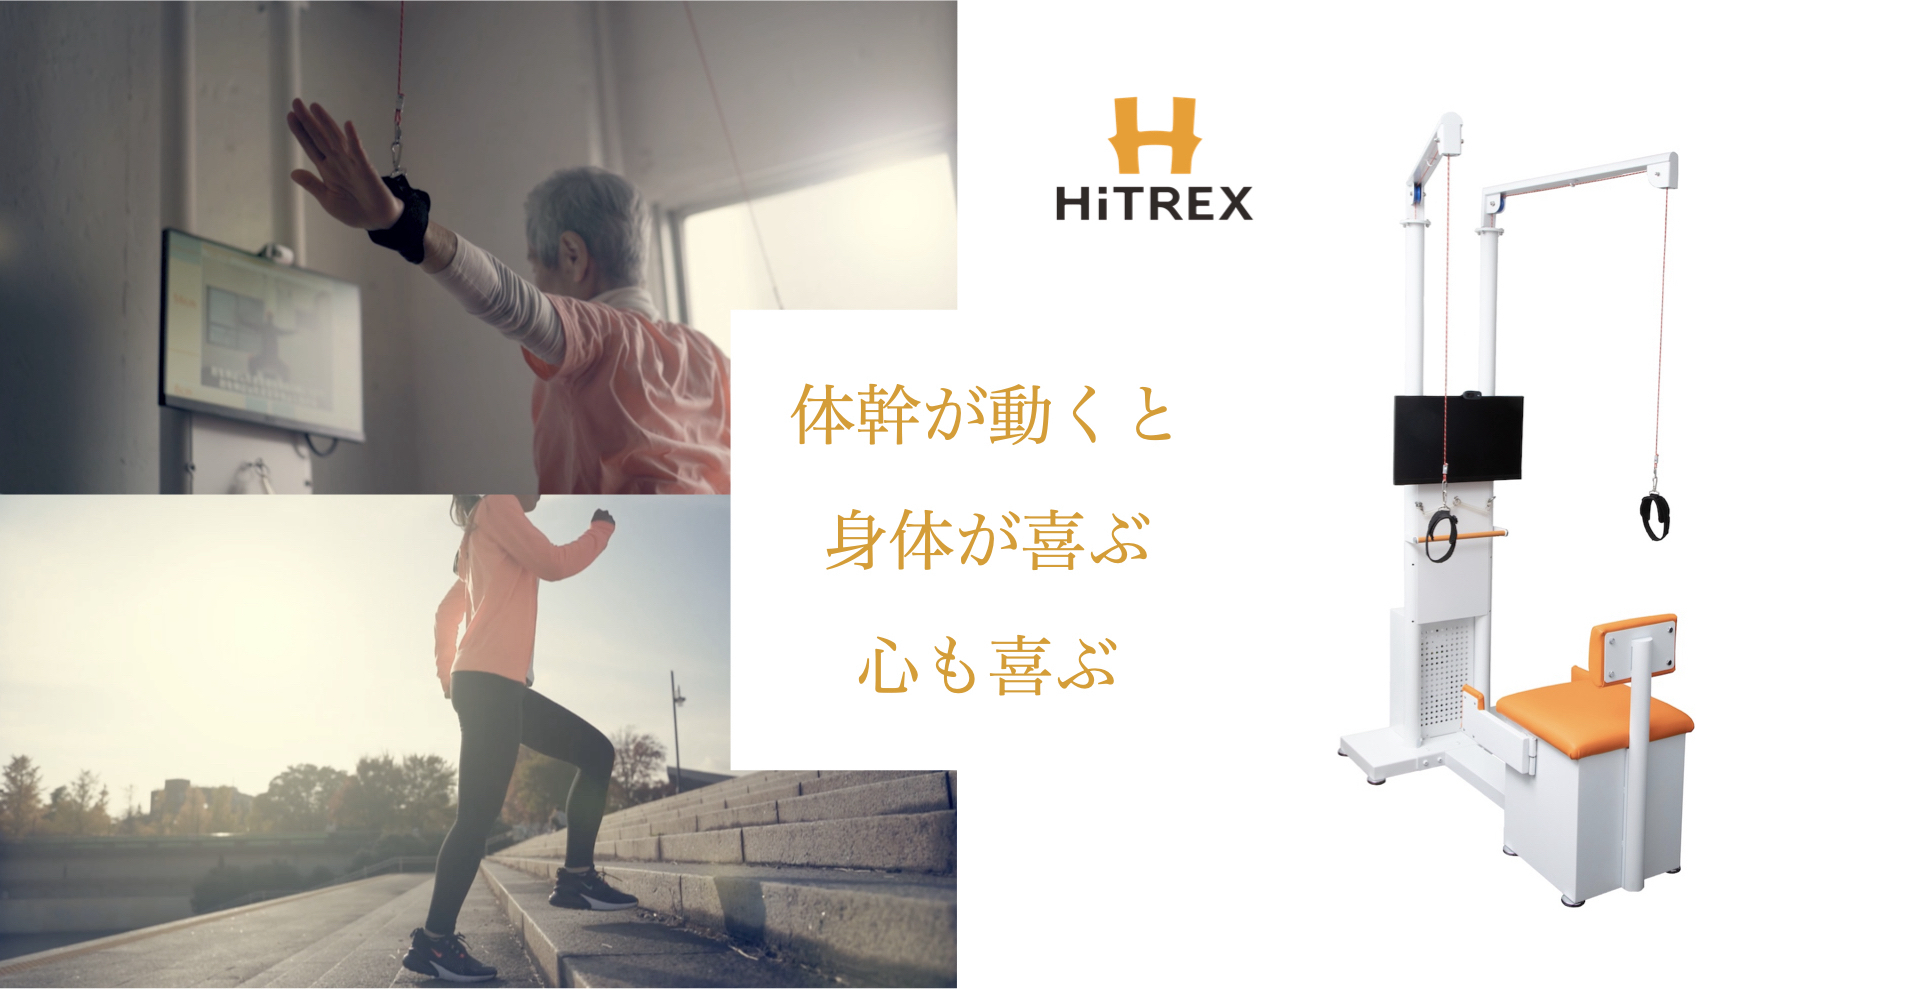 介護予防・自立支援・運動機能向上をサポート！
IoT機能訓練マシン『HiTREX(ハイトレックス)』を販売開始